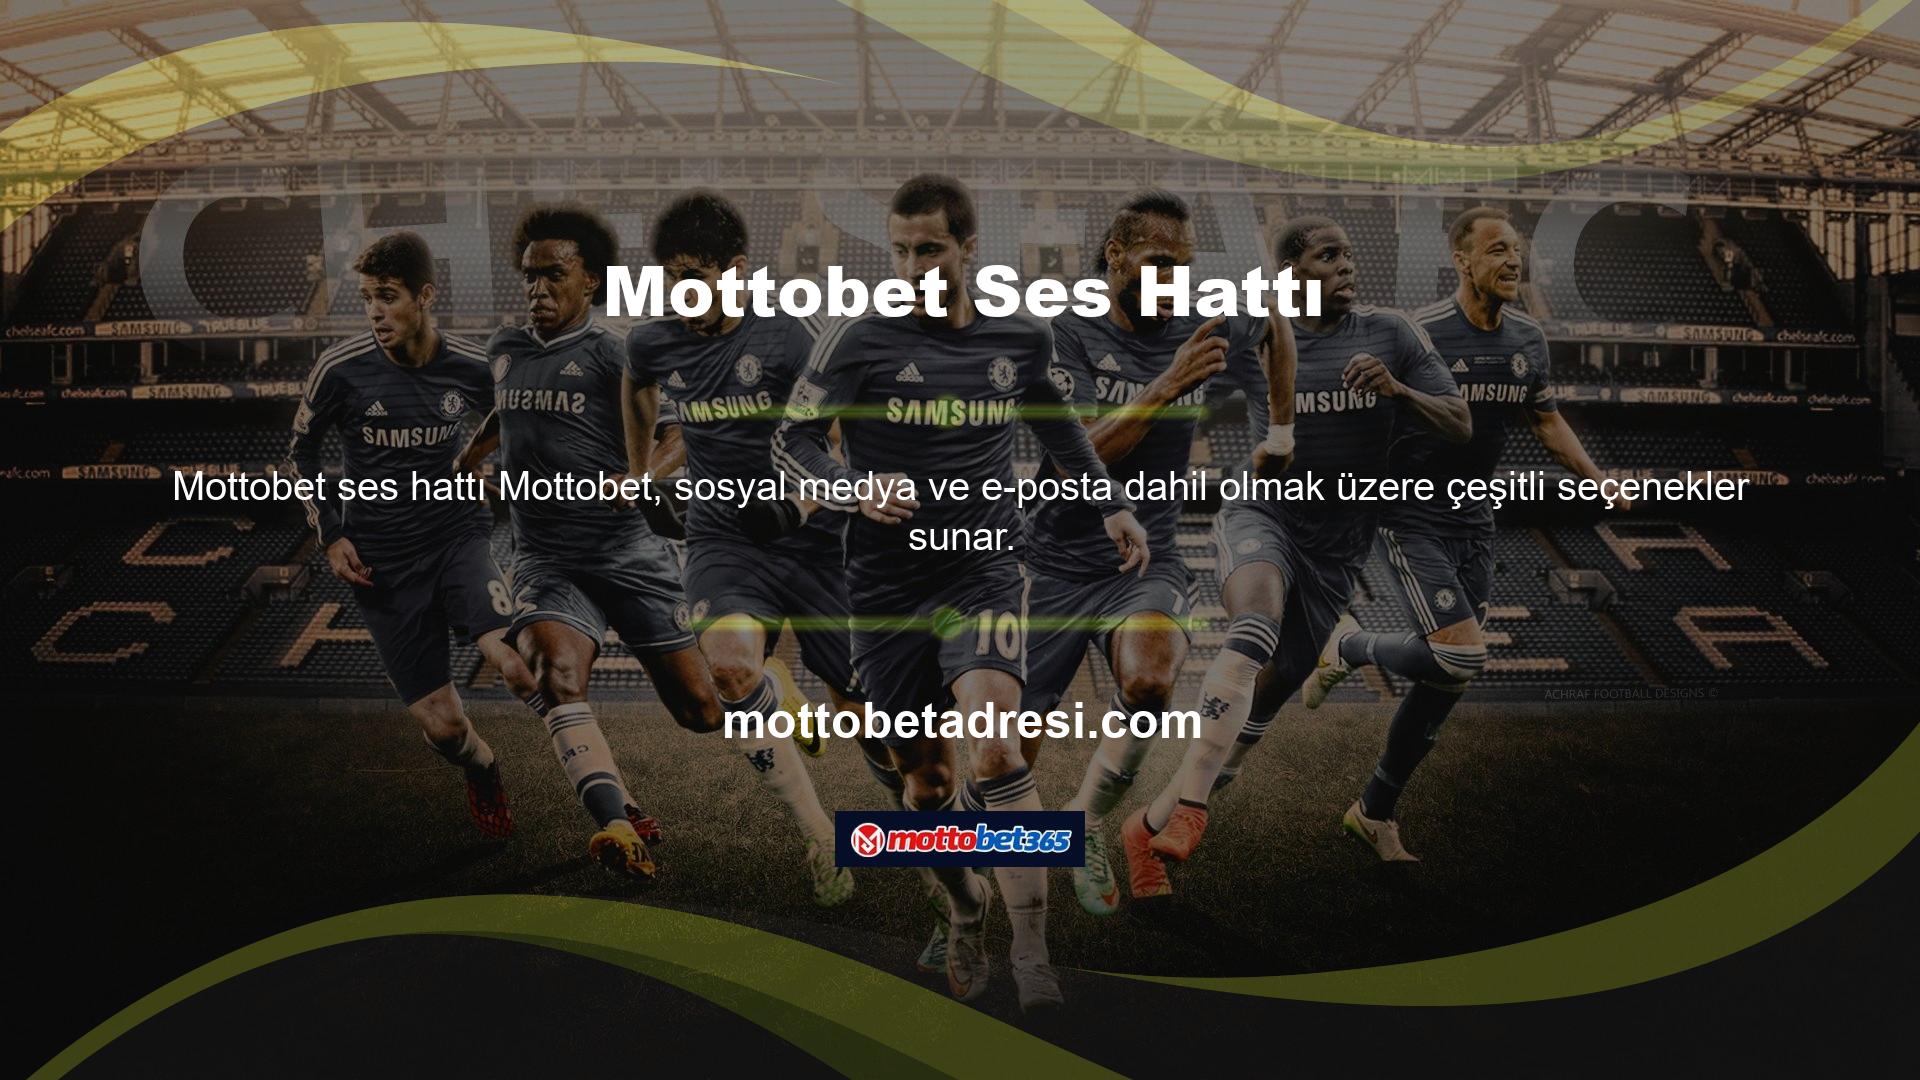 Mottobet Sohbet Hattı Mottobet web sitesi canlı destek hizmetleri de sunmaktadır